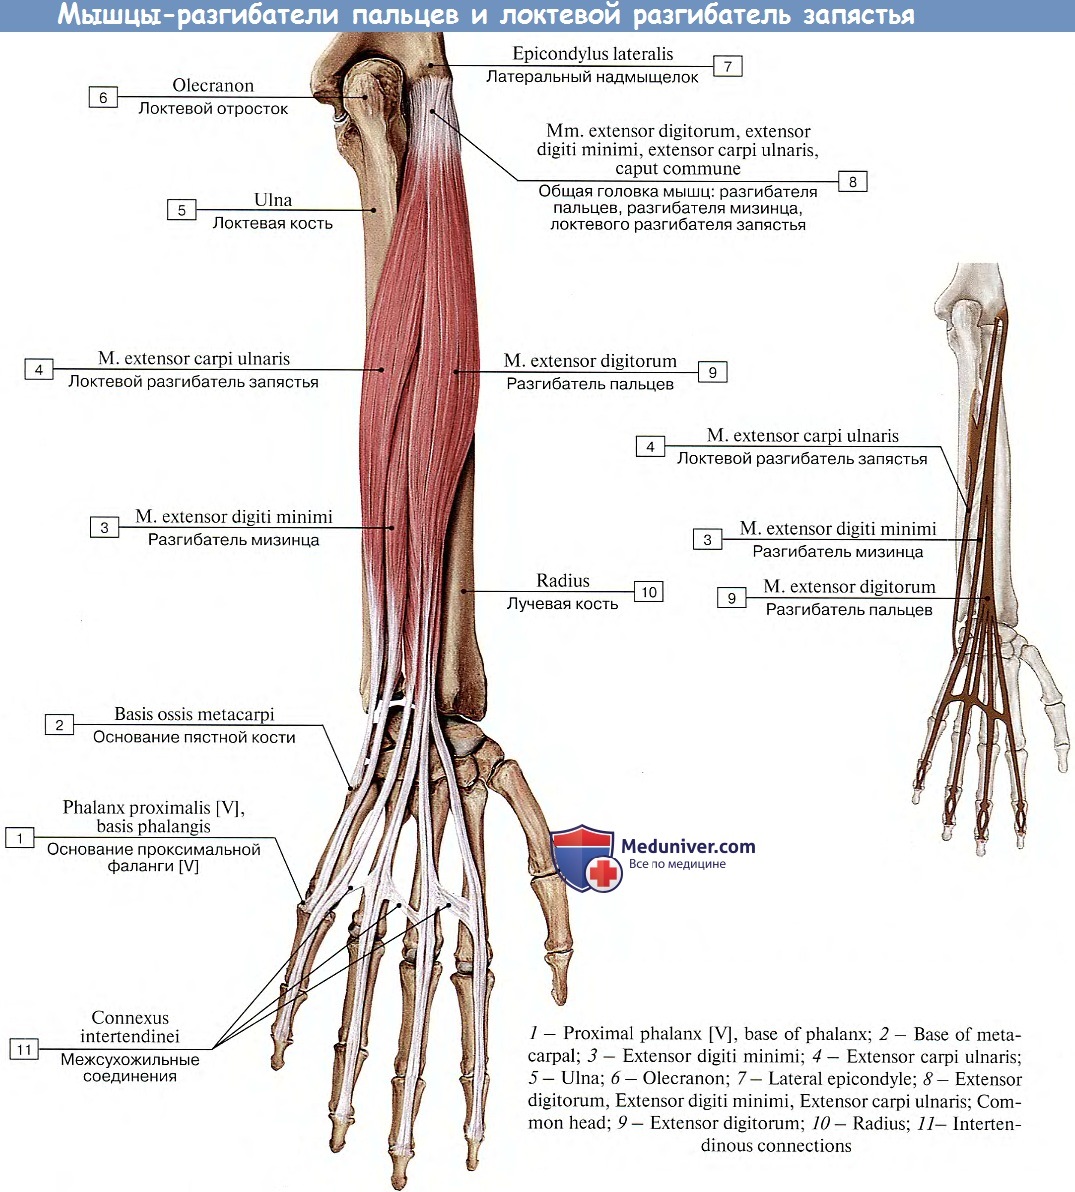 Сгибатель латынь. Мышцы предплечья разгибатели пальцев анатомия. Мышцы предплечья анатомия задняя группа. Локтевой сгибатель кисти мышца. Разгибатели пальцев кисти анатомия.